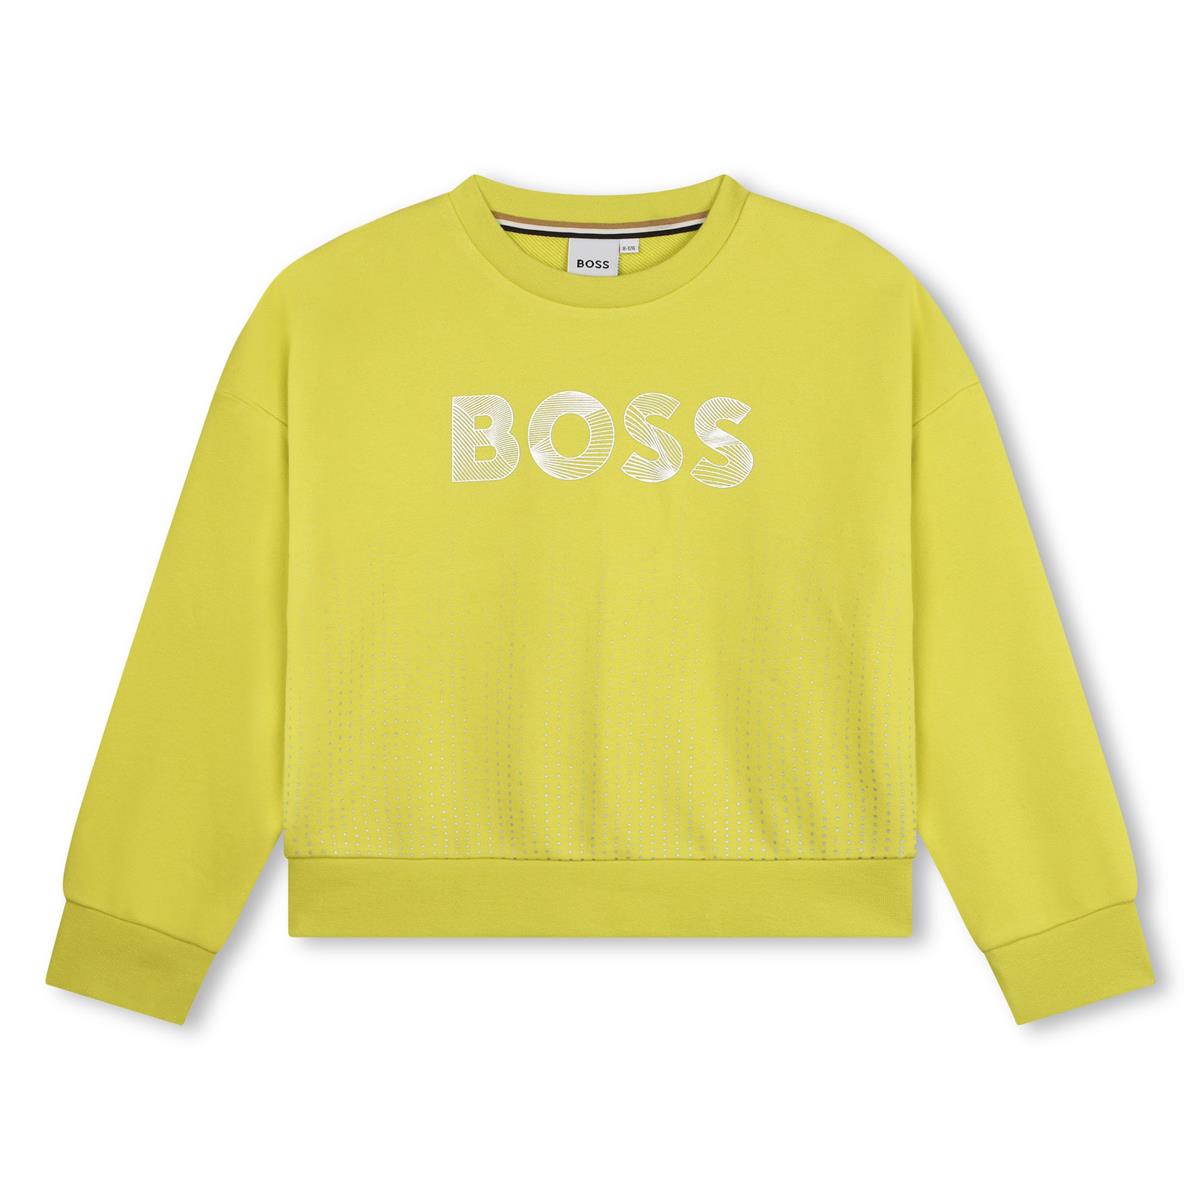 Girls Yellow Cotton Sweatshirt